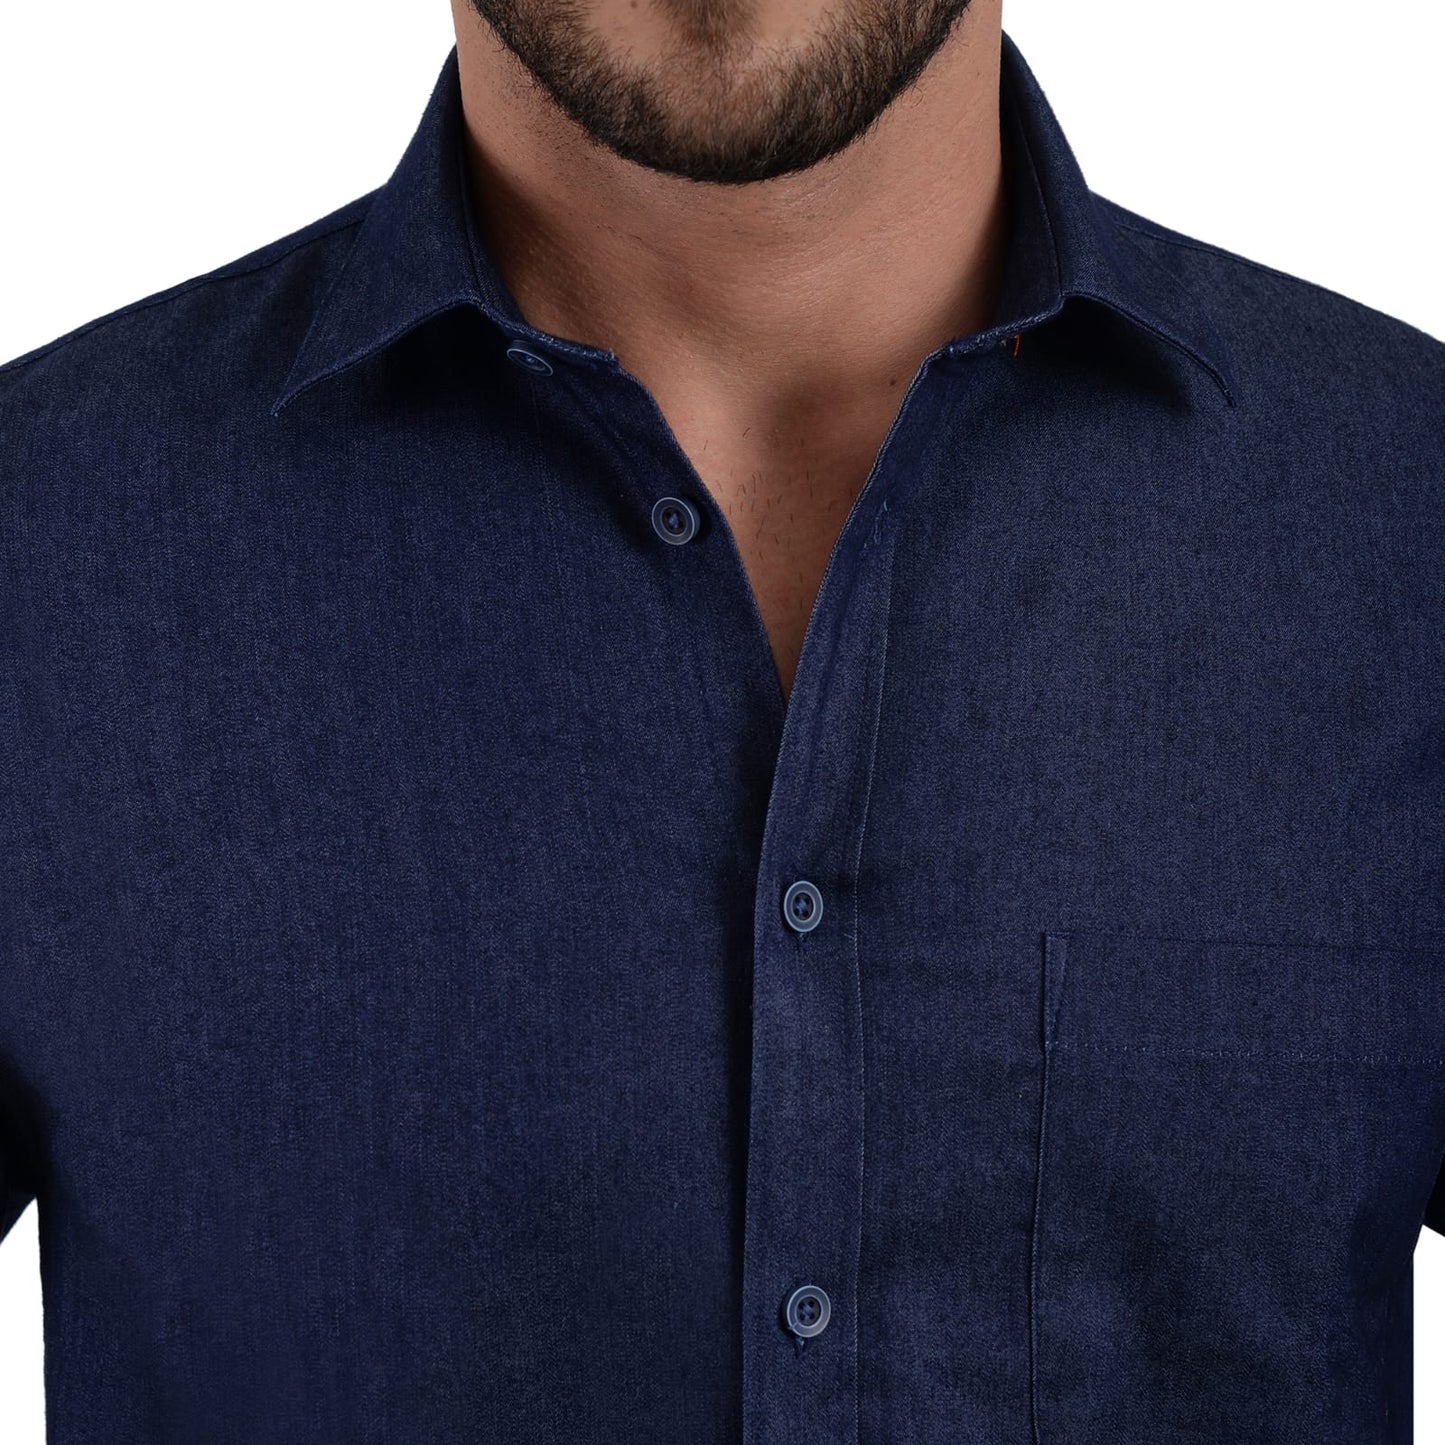 Camisa manga larga tipo denim azul marino